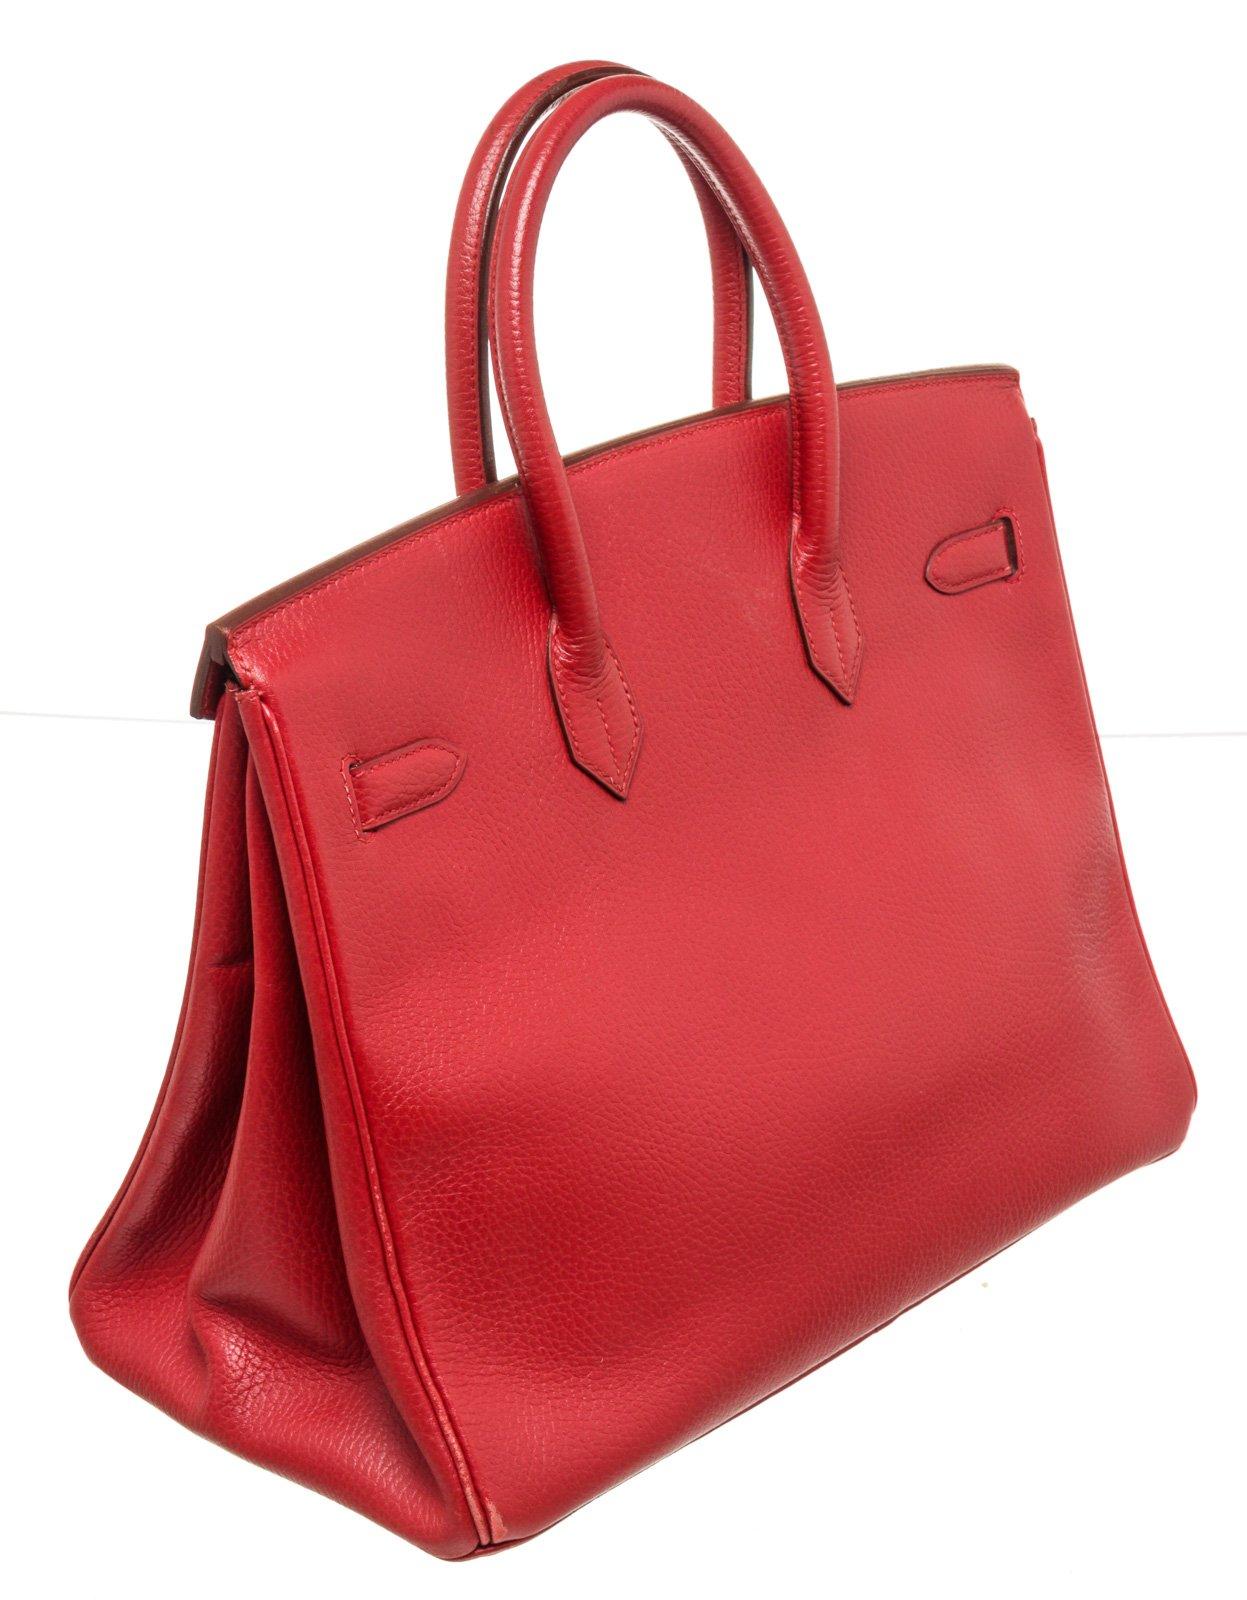 Hermes Red Leather Birkin 35cm Satchel Bag 2